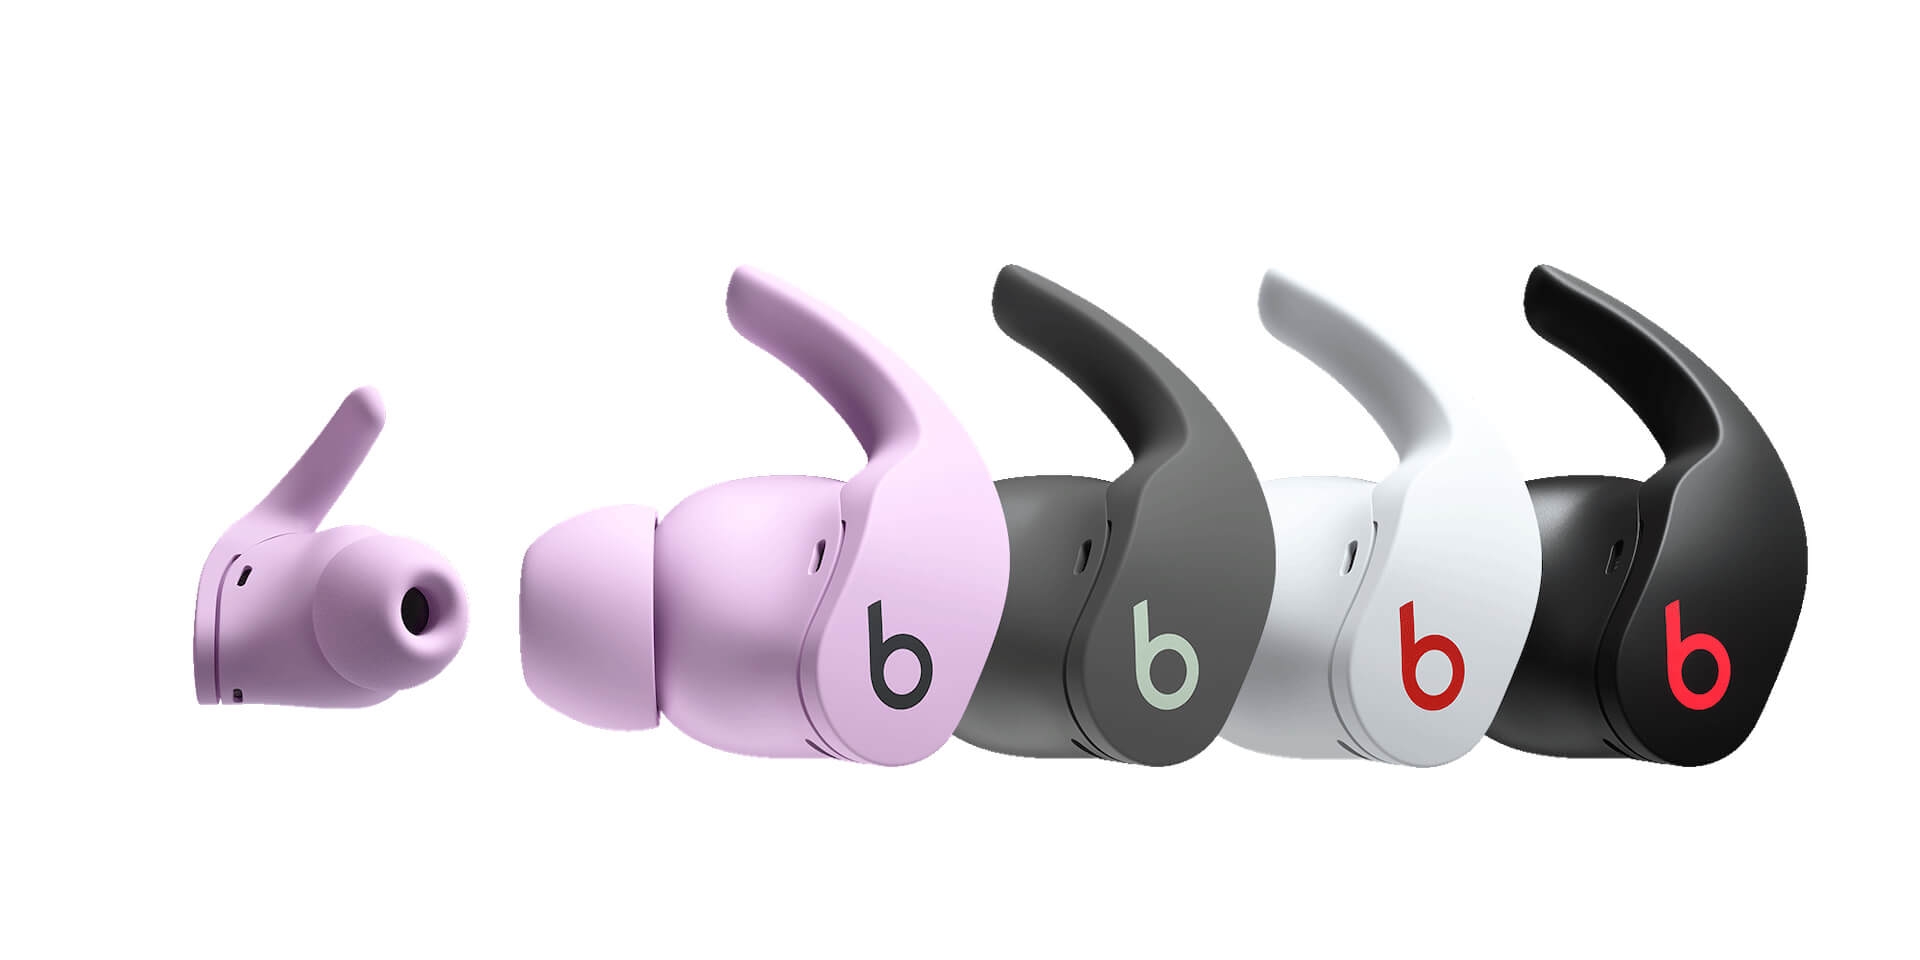 Beats by Dr. Dreからウィングチップデザインを採用したワイヤレスイヤホン『Beats Fit Pro』が登場！Apple H1チップ搭載 tech211102_beatsfitpro_1